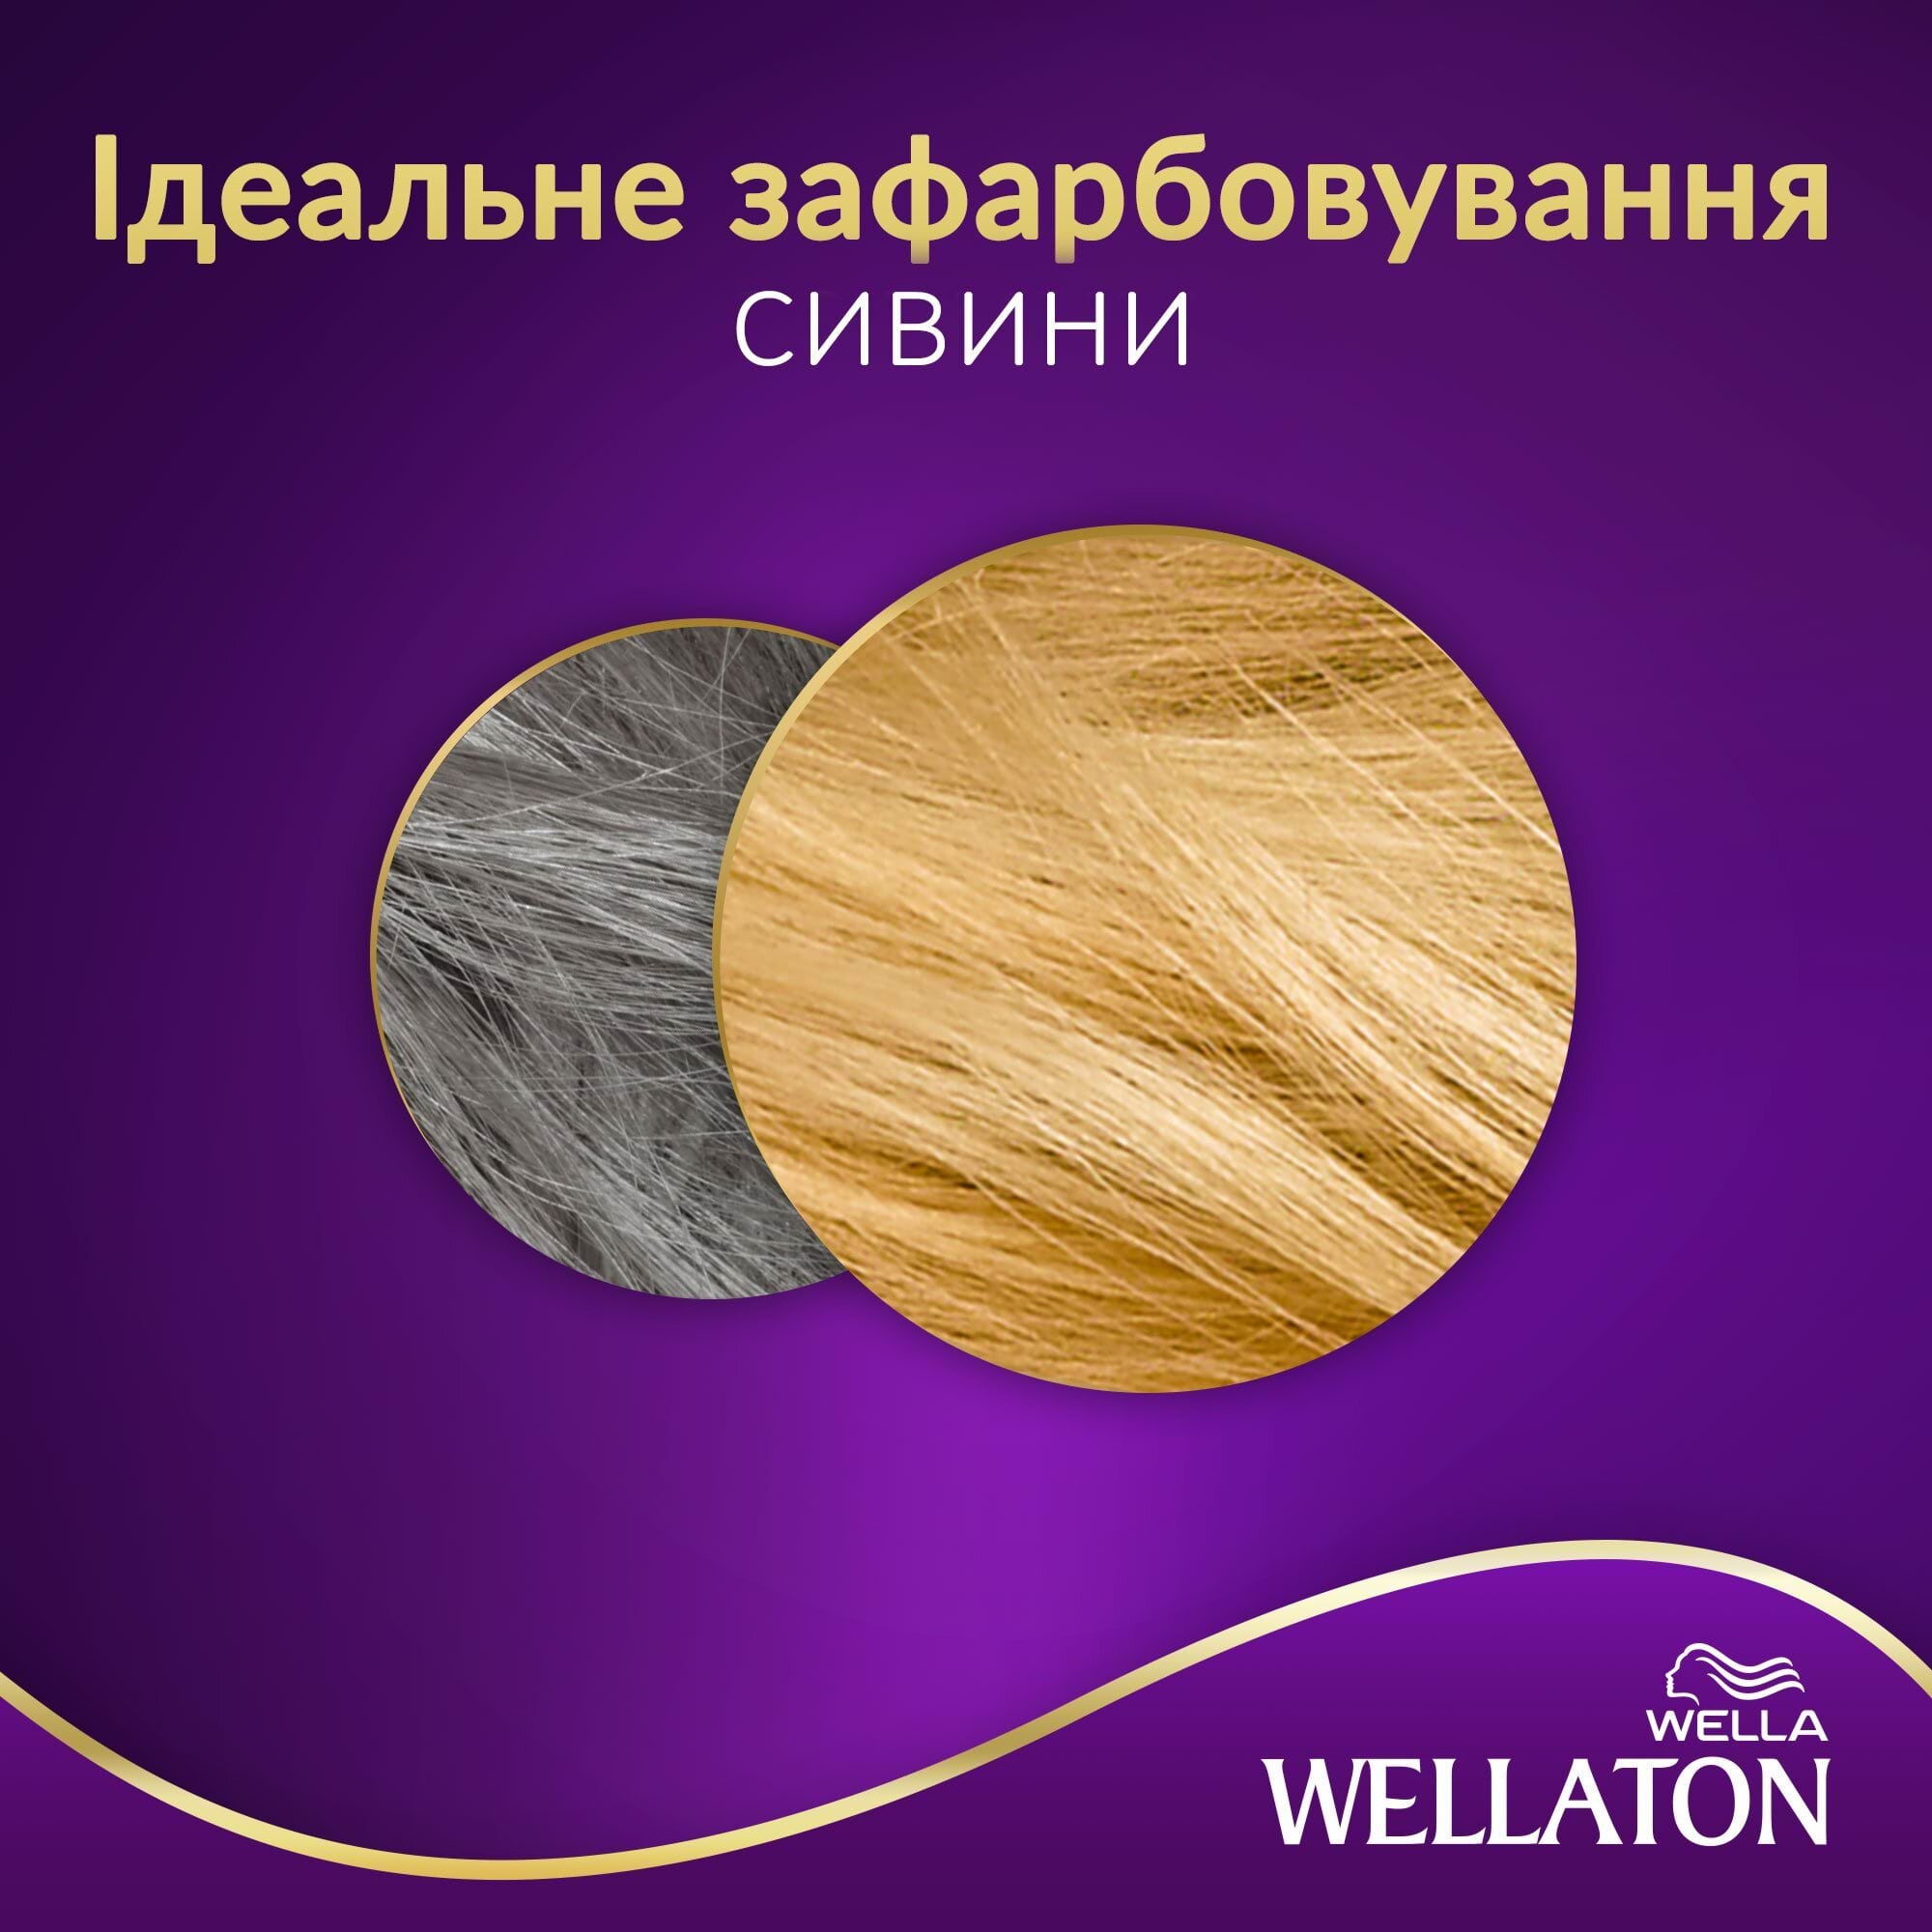 Крем-краска для волос Wellaton - Золотой блондин 9/3.